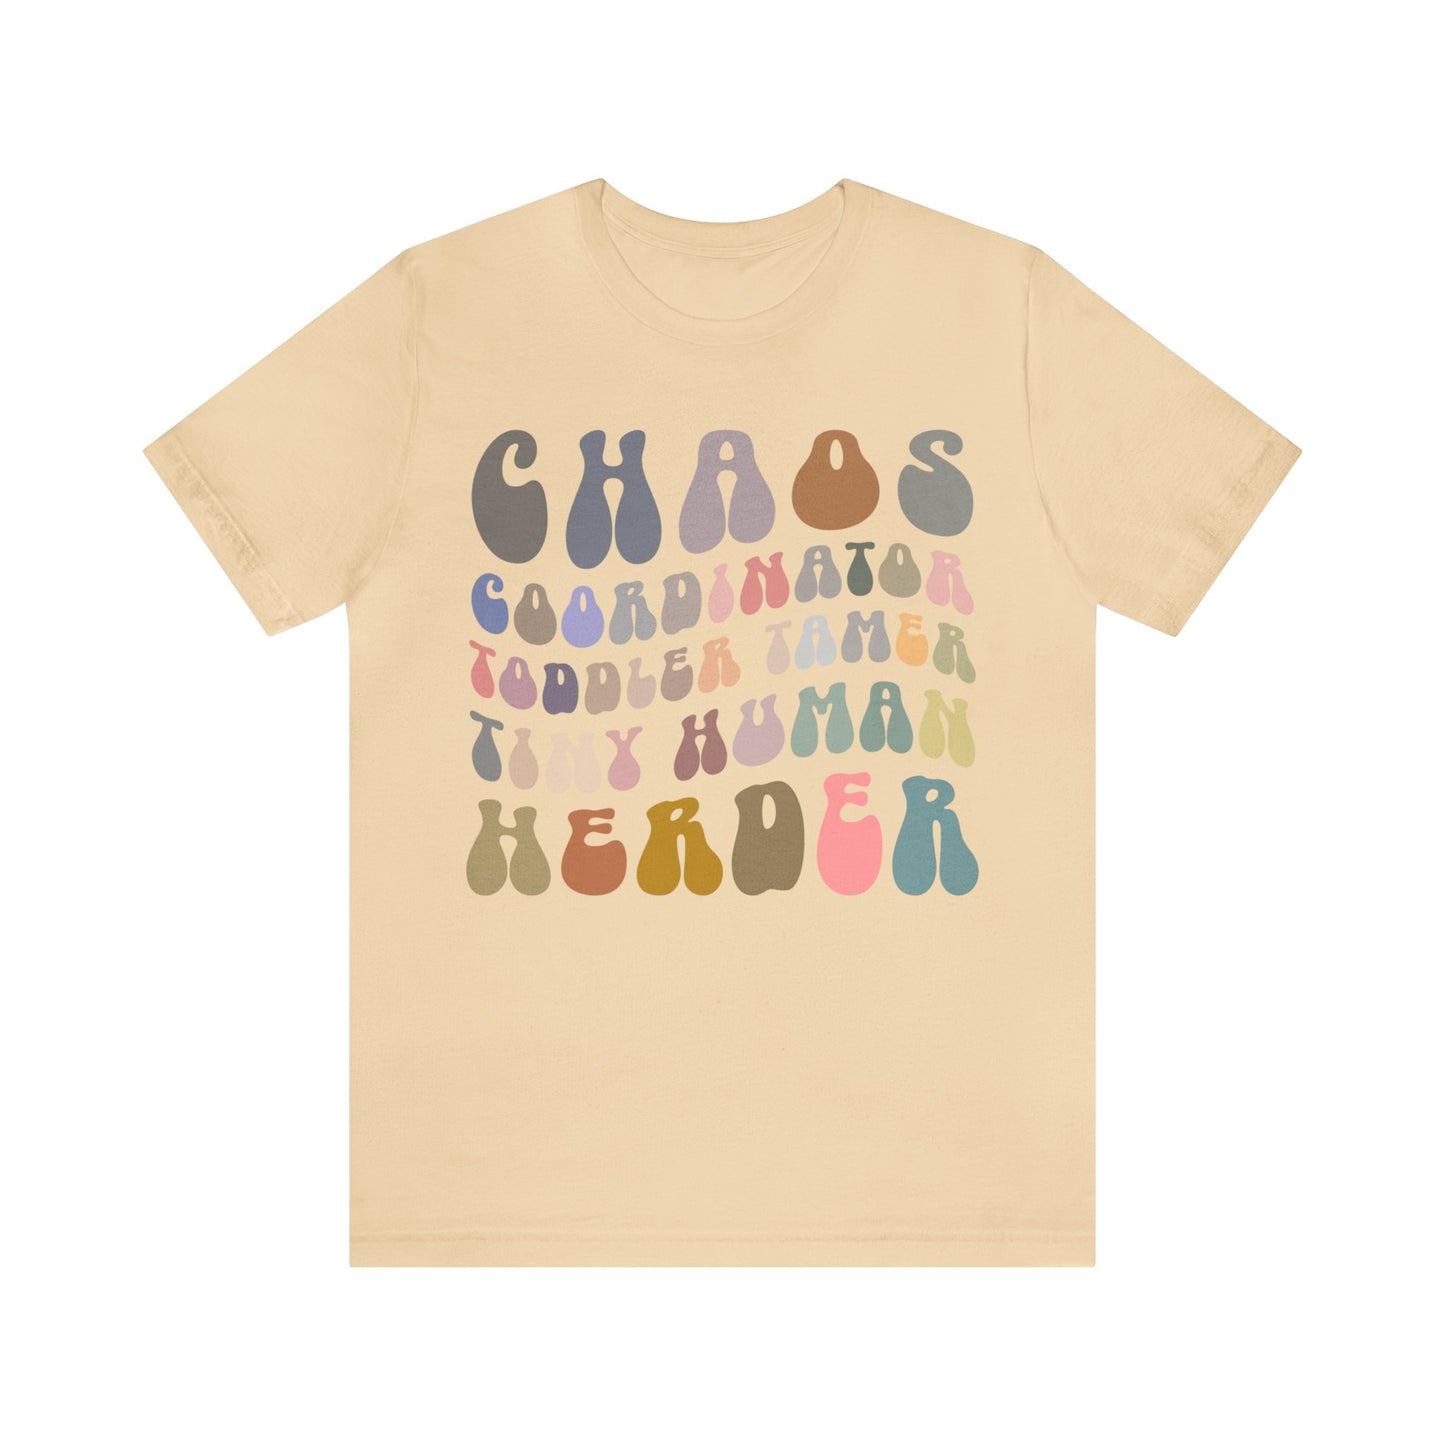 Chaos Coordinator Toddler Tamer Tiny Human Herder Shirt, Kindergarten Teacher Shirt, Toddler Shirt, Mom Shirt, Babysitter Shirt, T1282